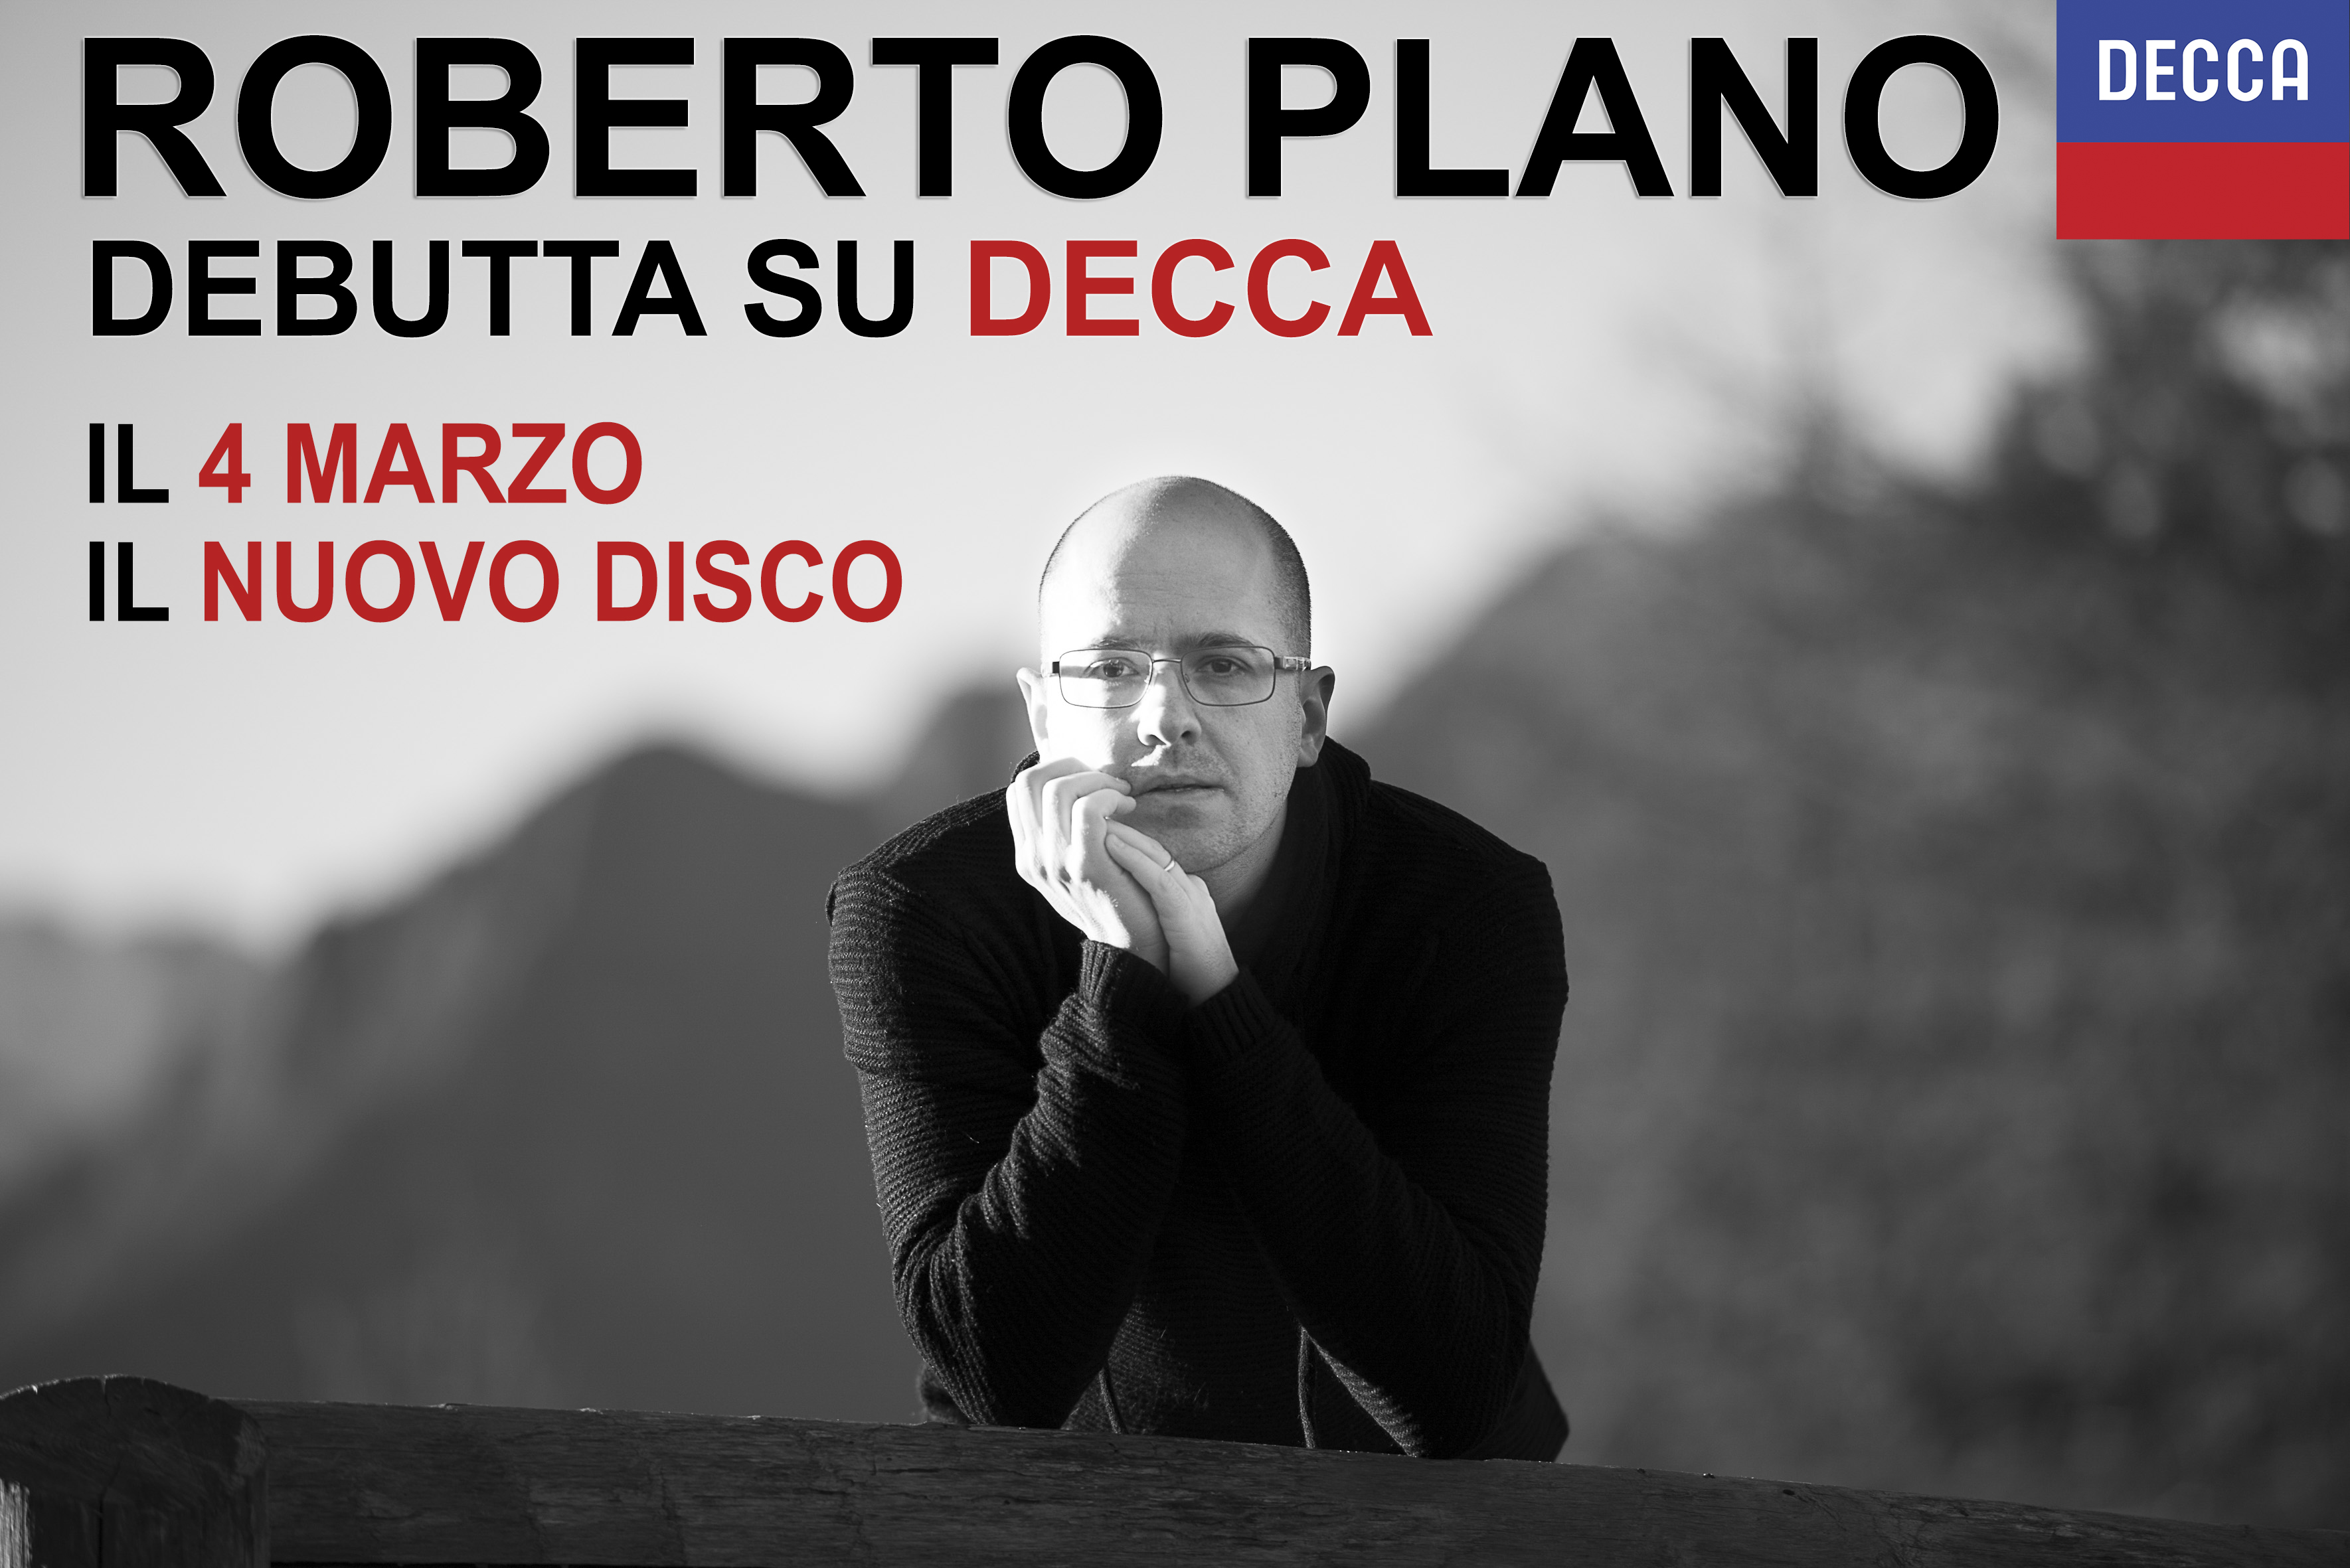 Roberto Plano debutta su Decca